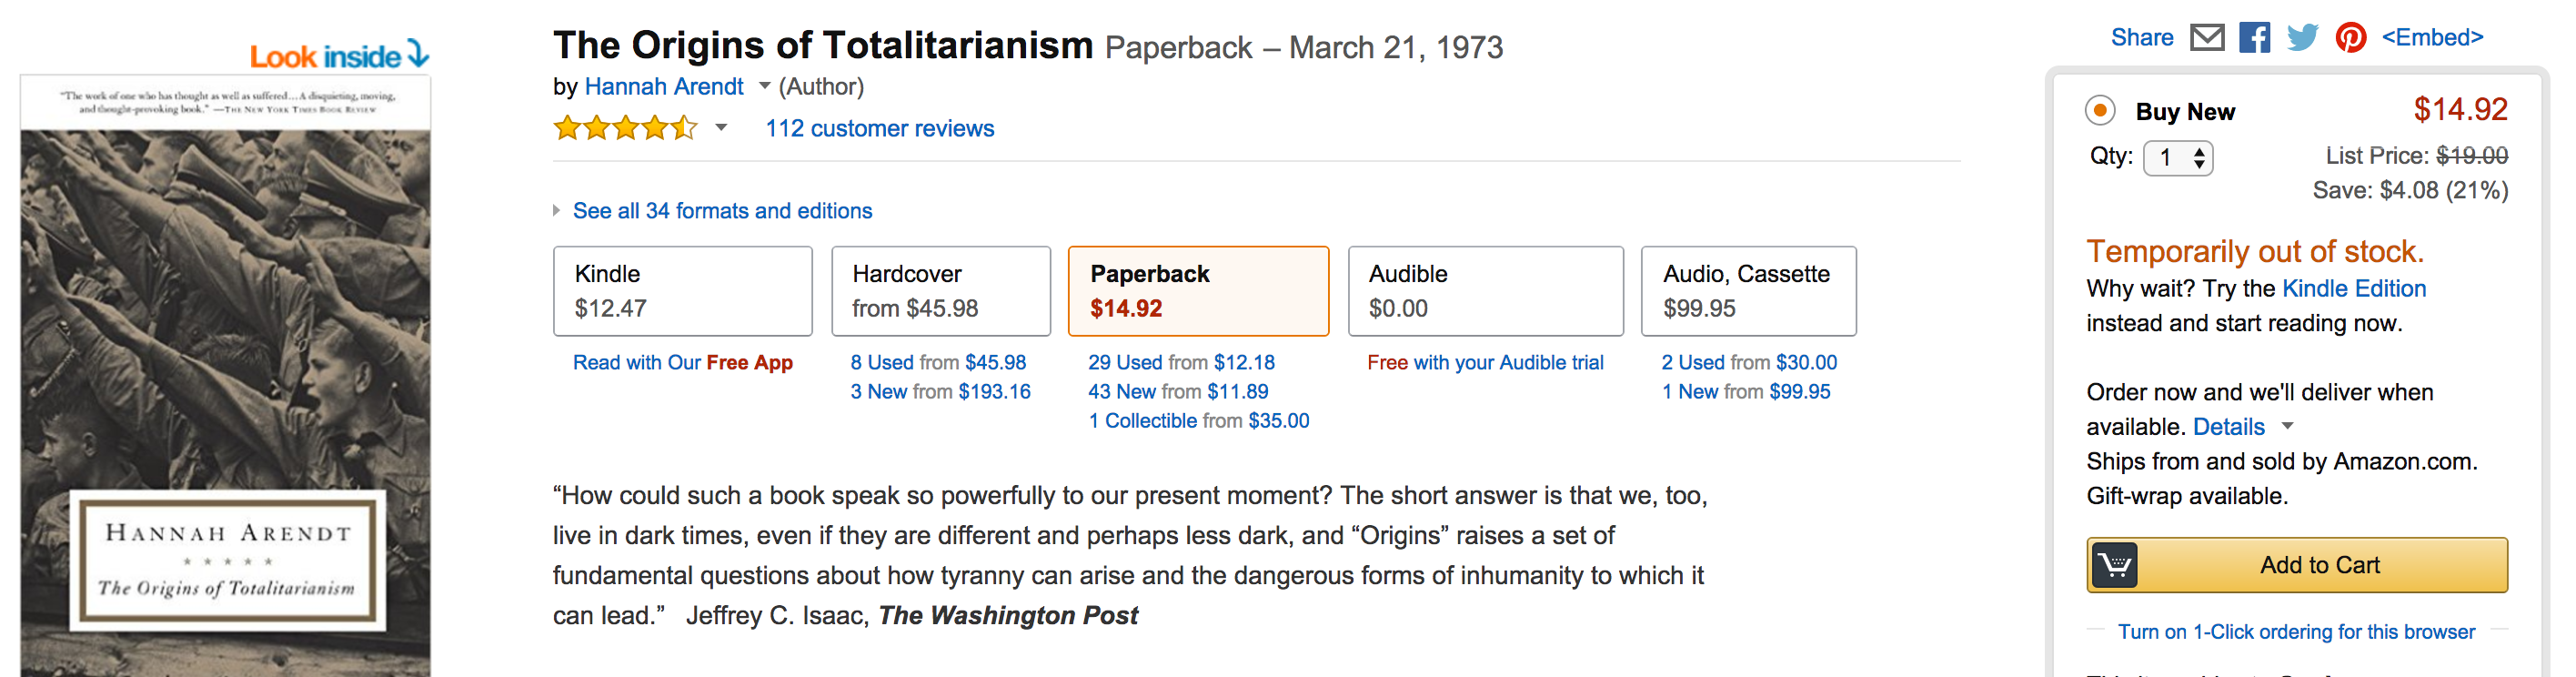 Capture d'écran de la rupture de stock du livre "Les origines du totalitarisme" d'Hannah Arendt